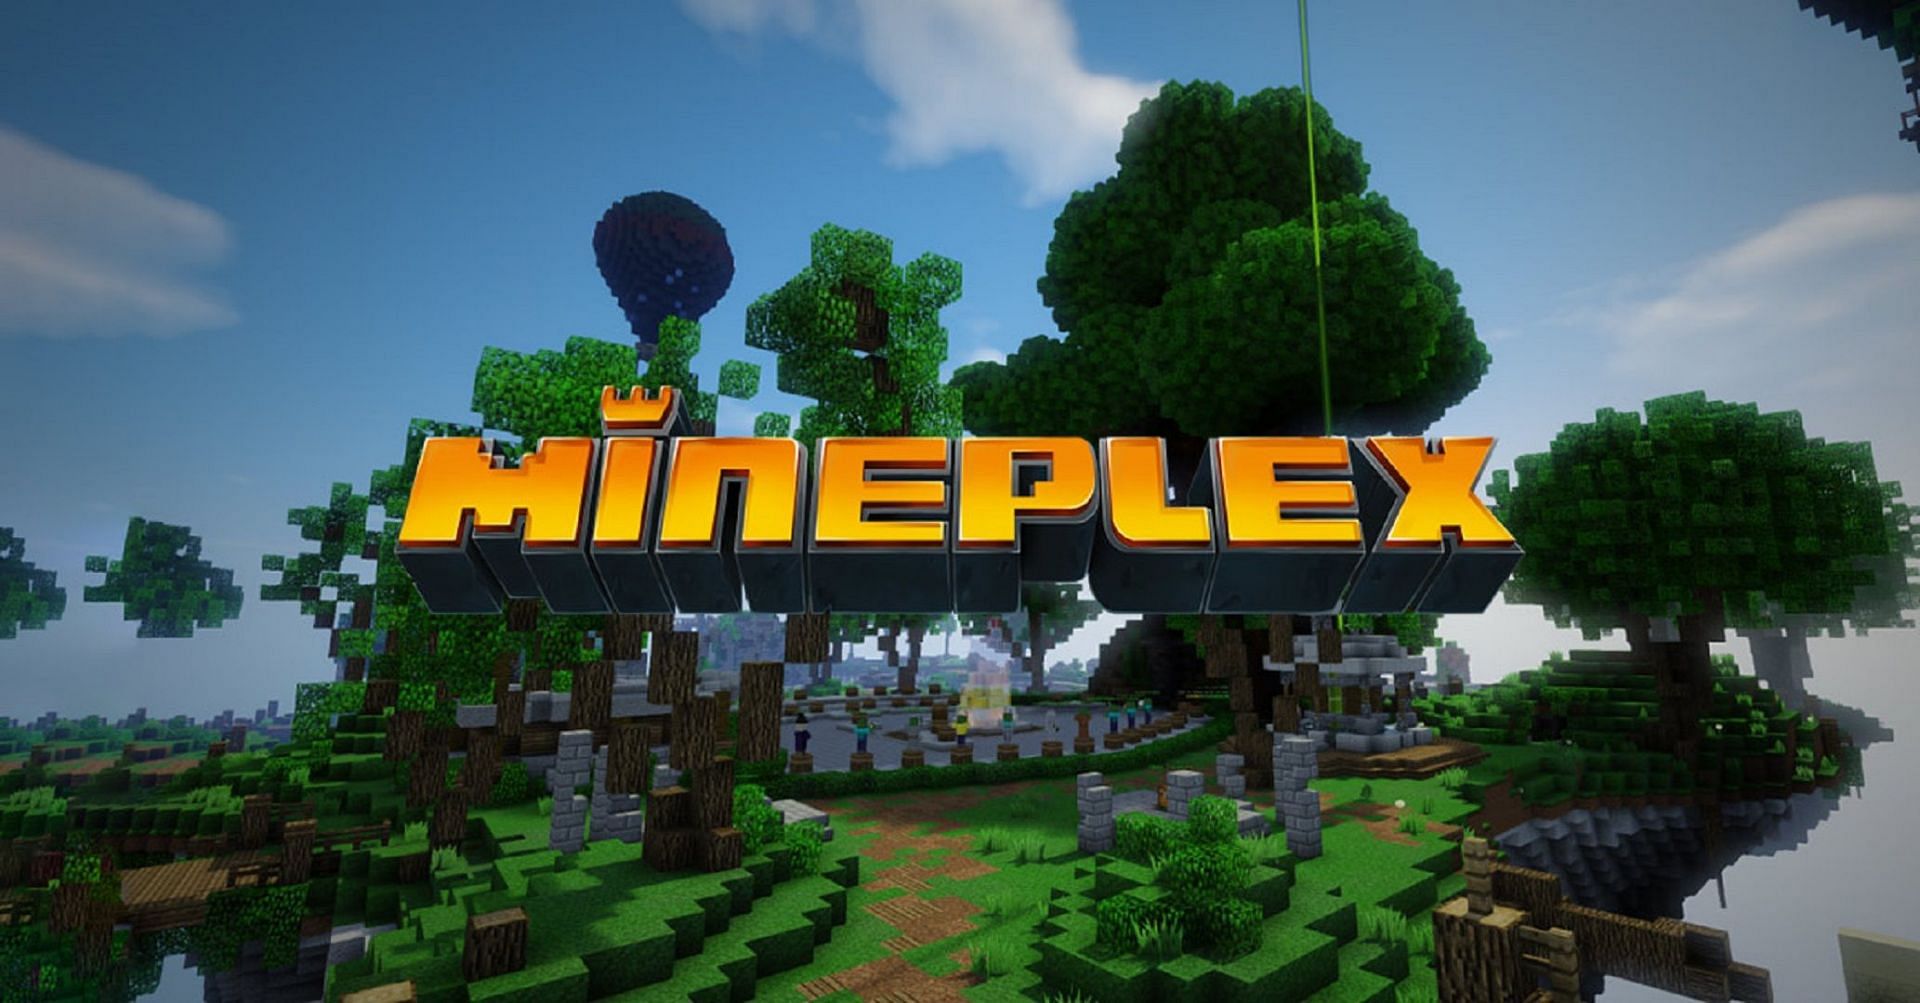 Official Mineplex Logo (Image via Xbox.com)